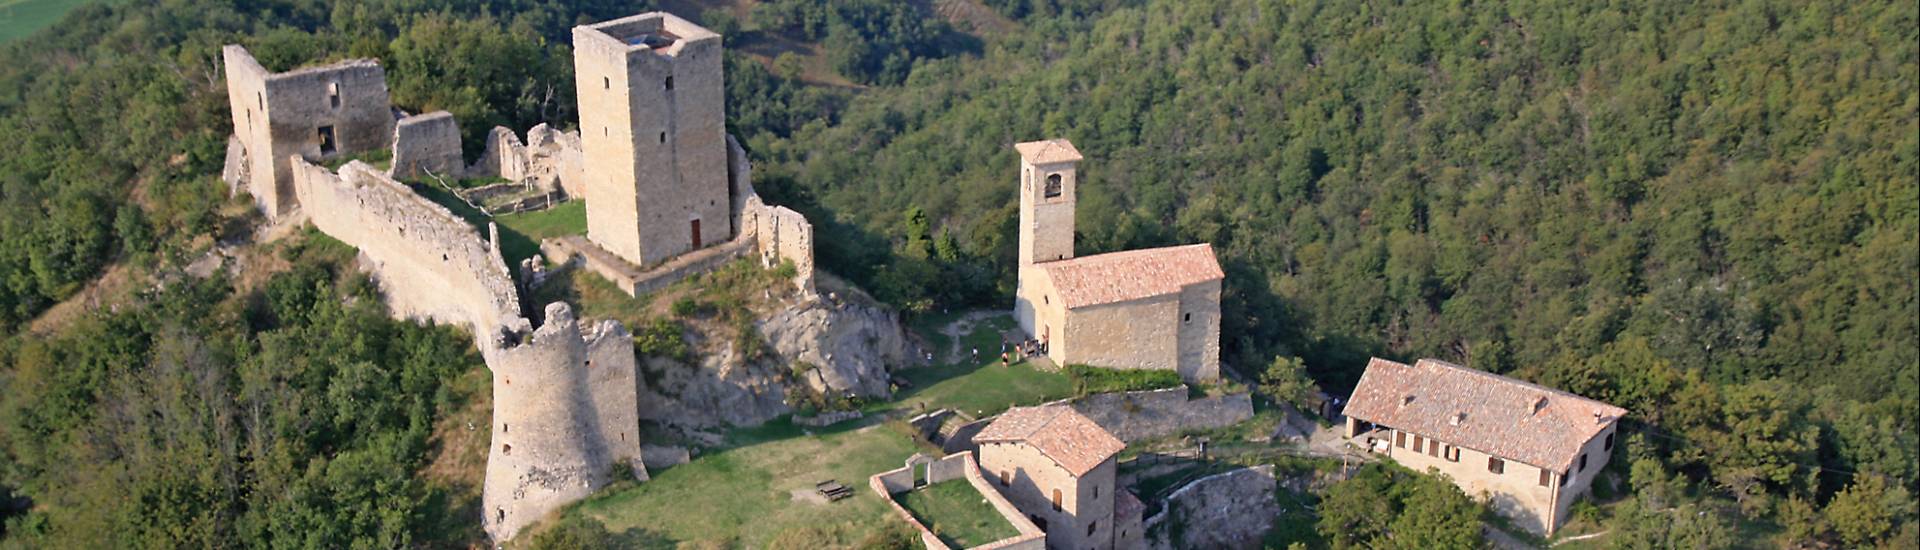 Castello di Carpineti - complesso del castello di carpineti foto di: |sandro beretti| - sandro beretti